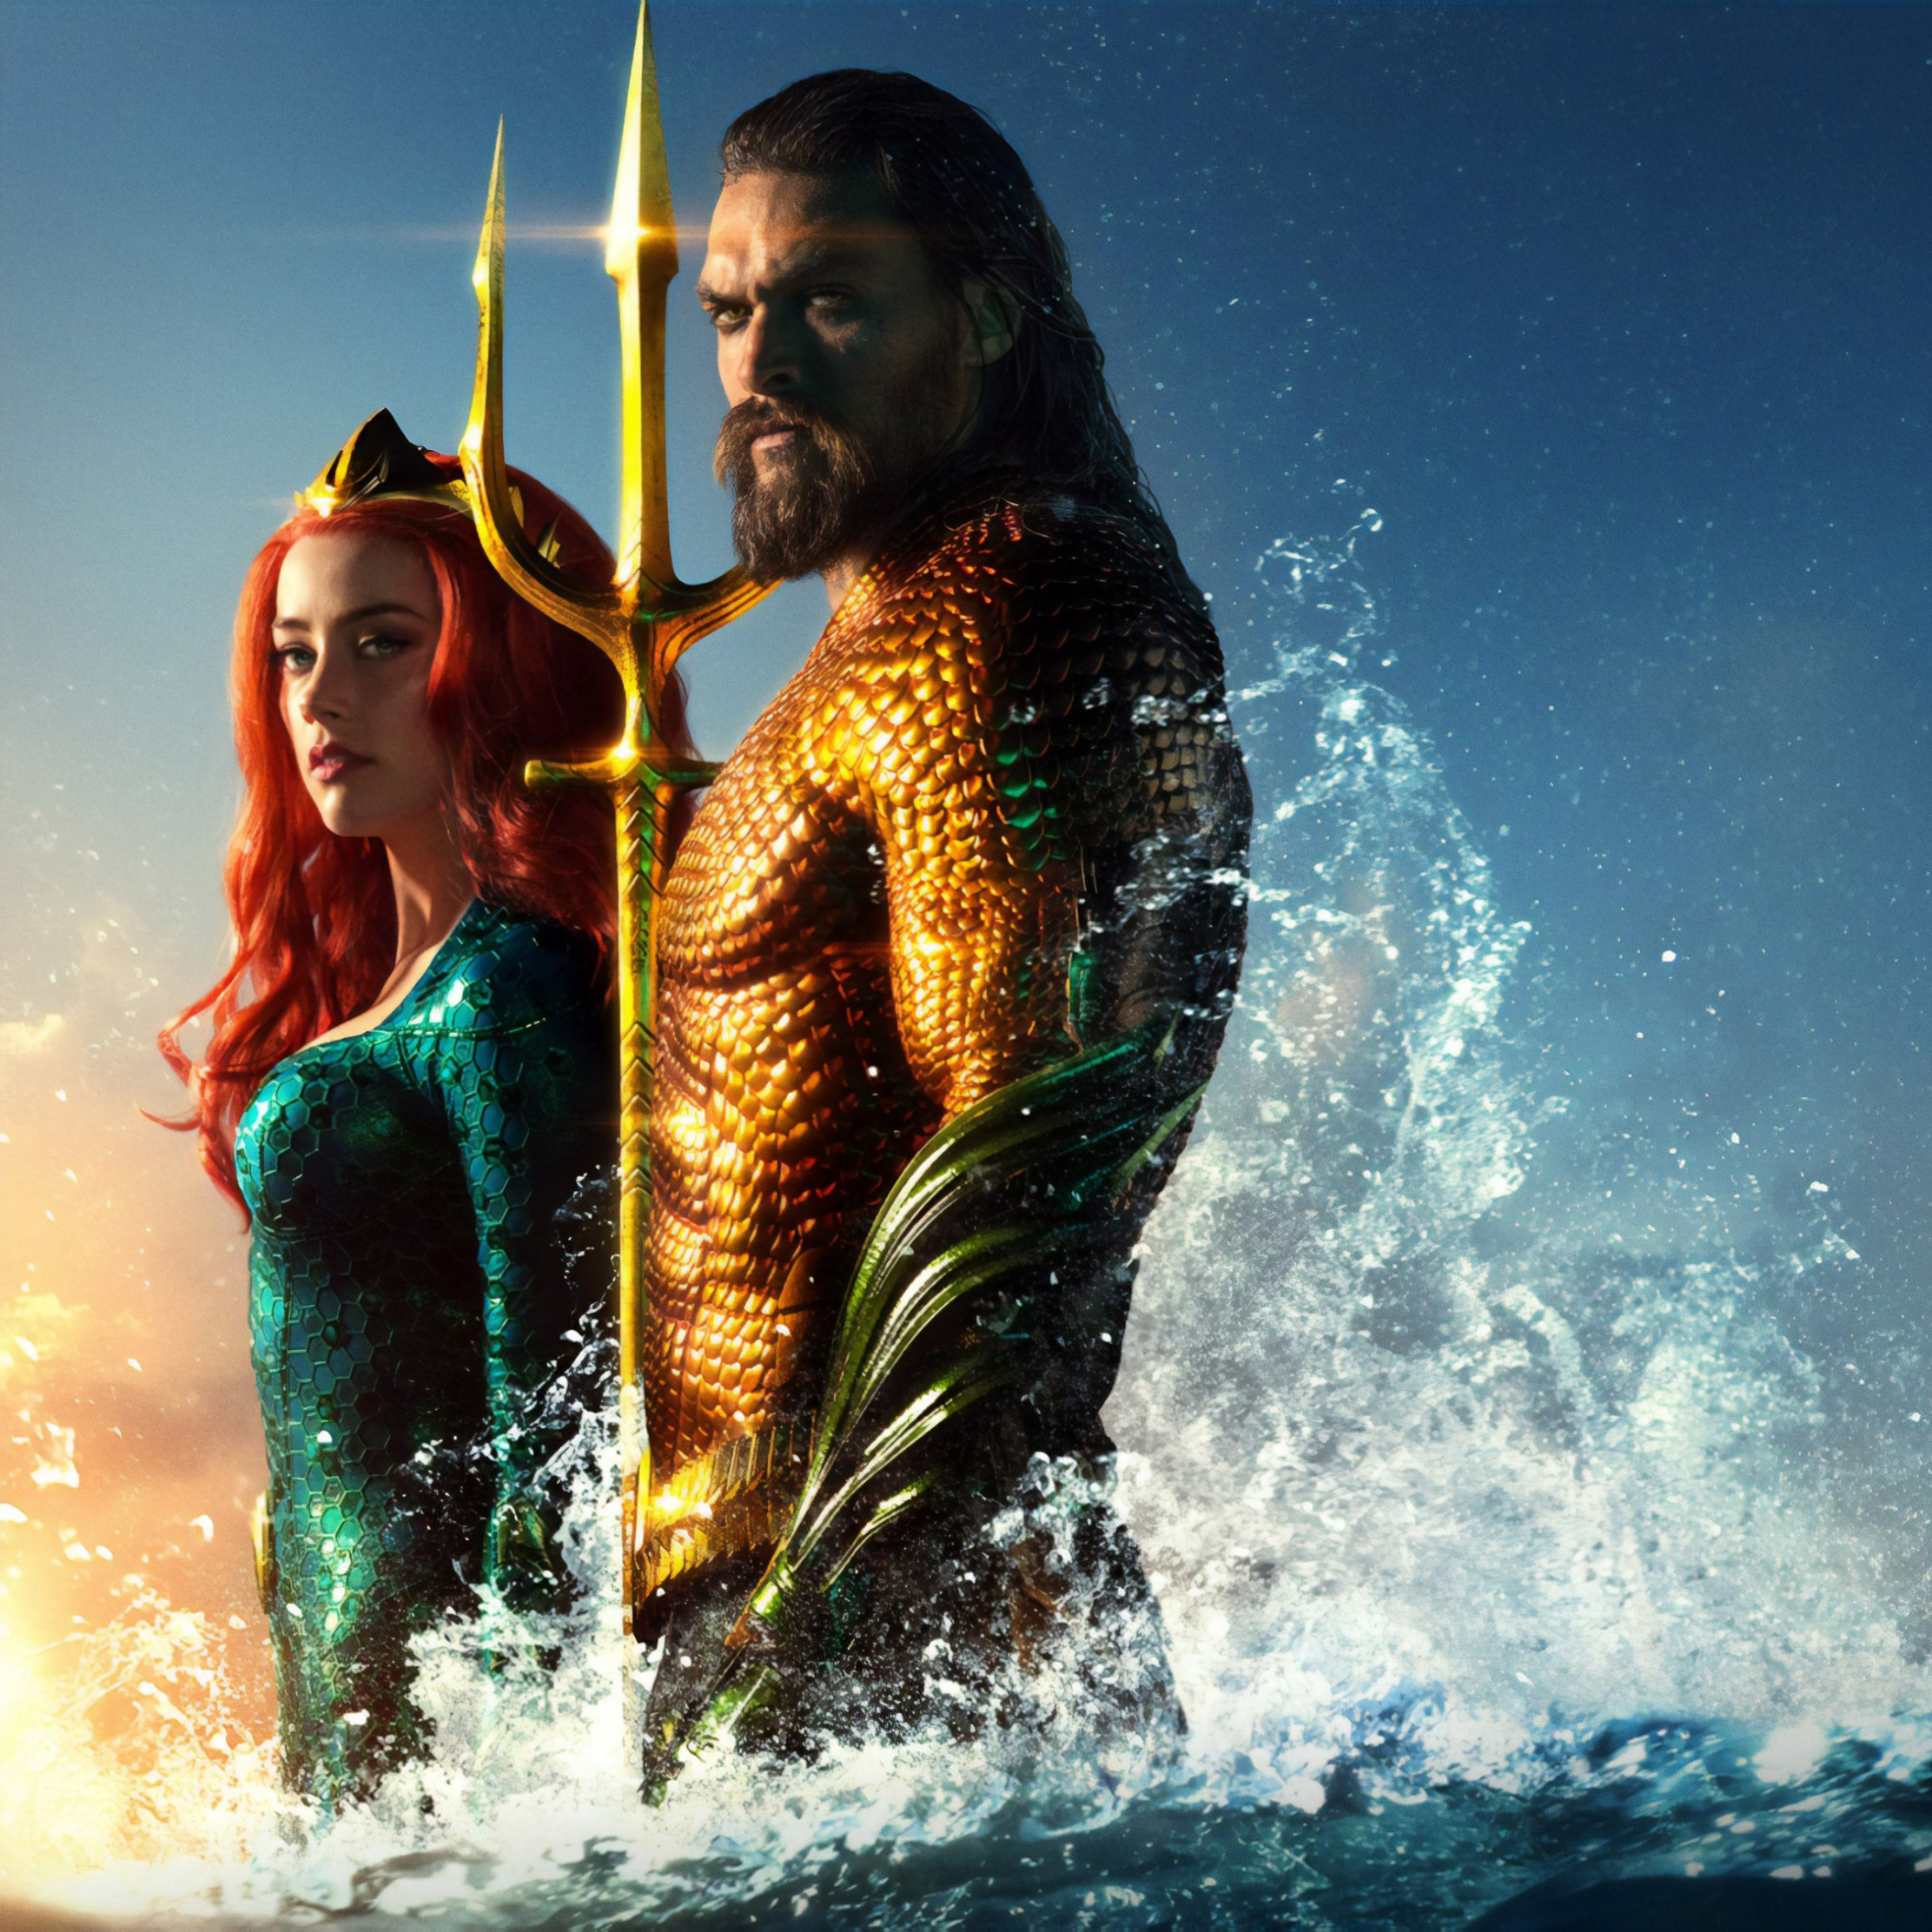 Download wallpaper: Aquaman new poster 2224x2224